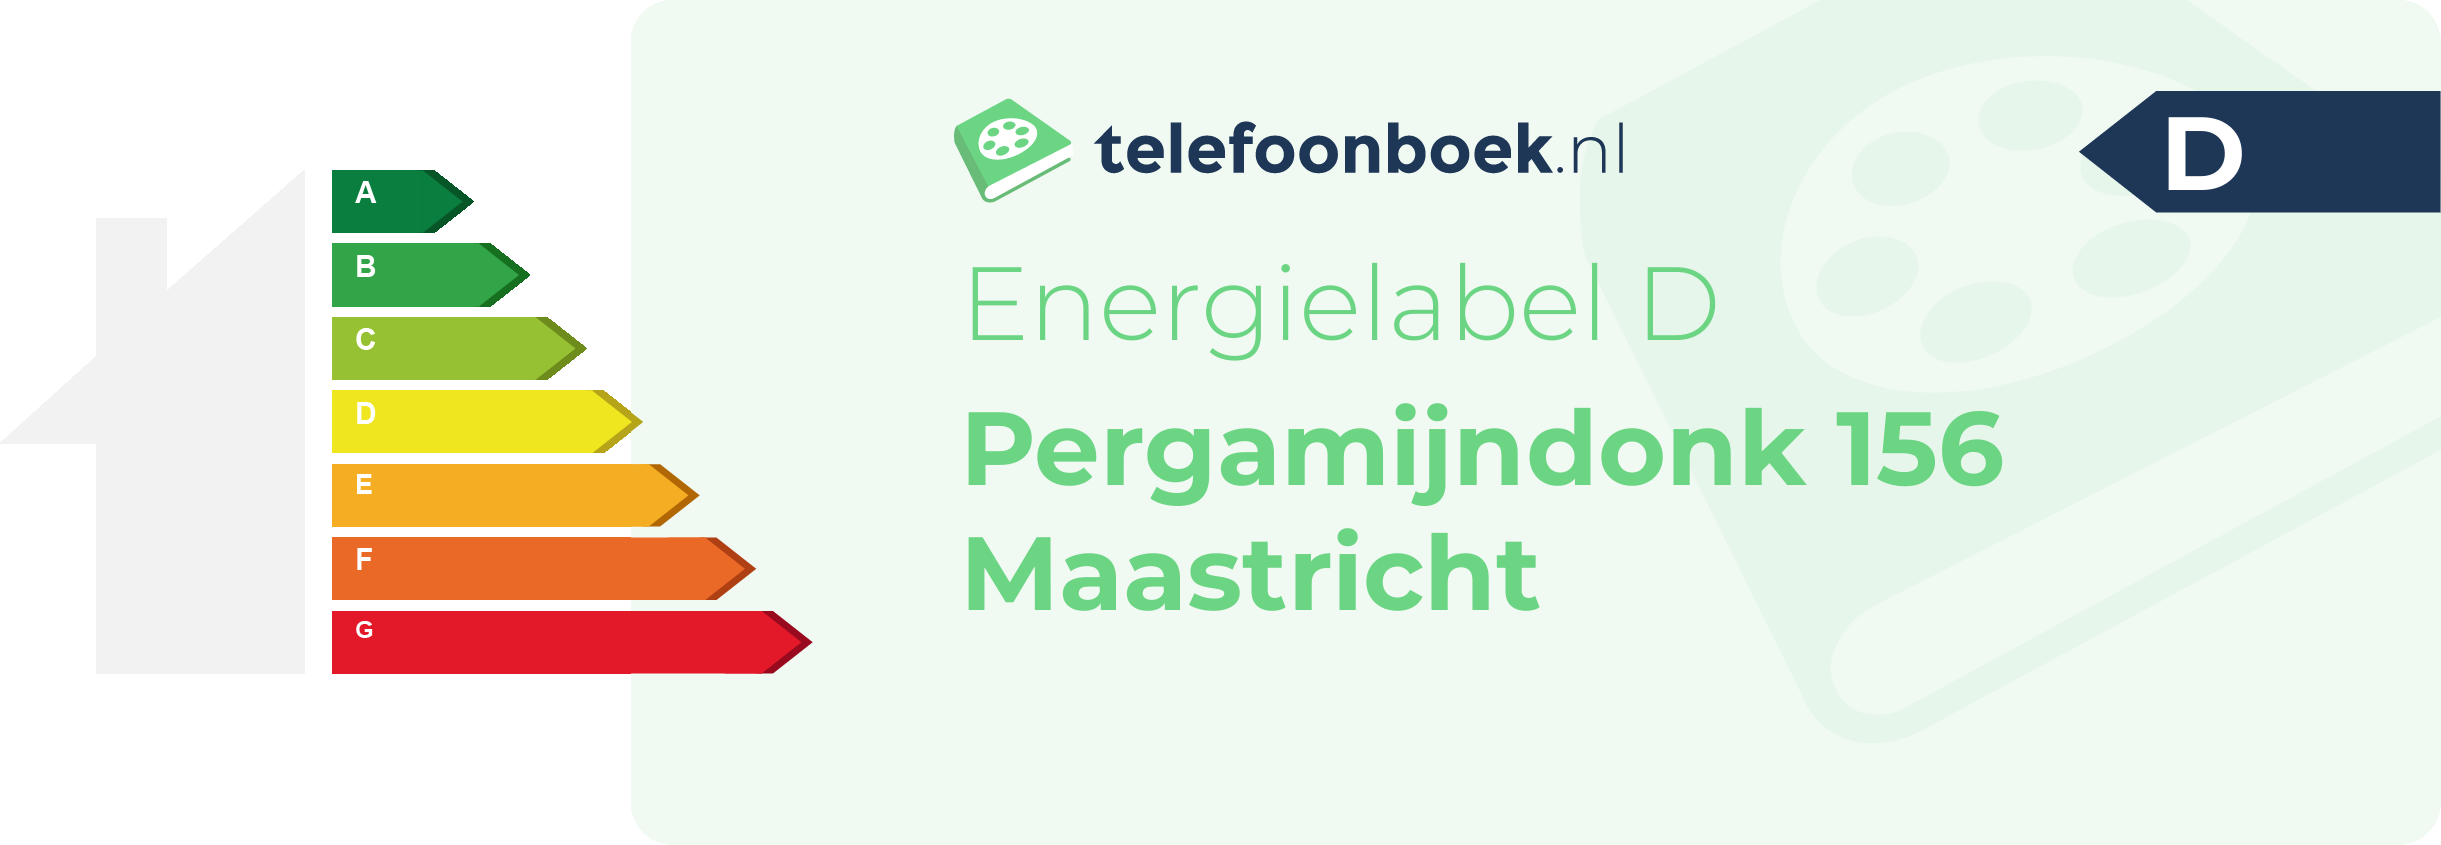 Energielabel Pergamijndonk 156 Maastricht